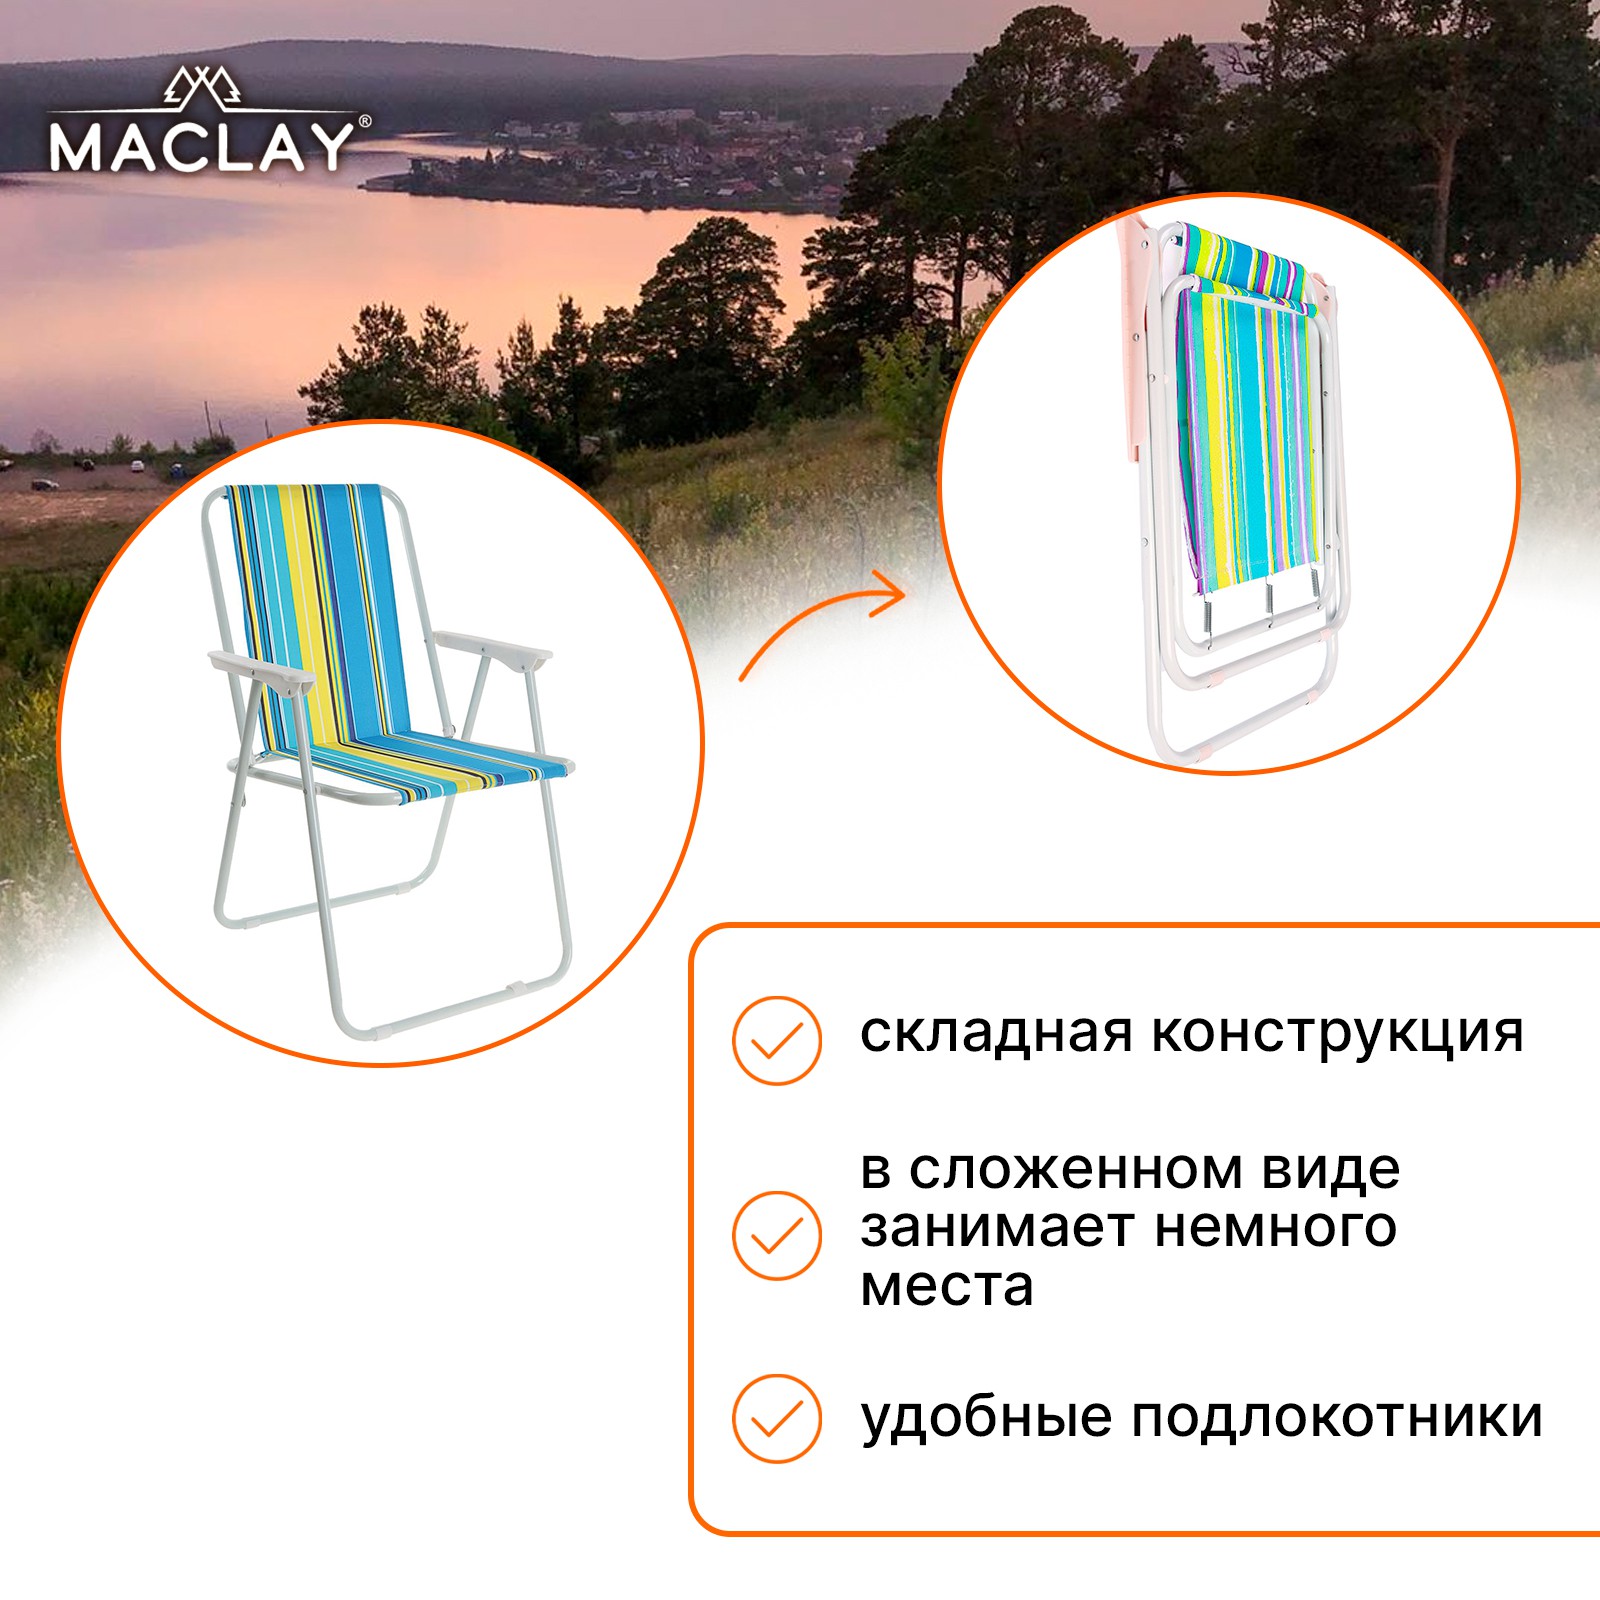 Кресло Maclay складное Sorrento 16. «G» р. 46 х 52 х 71 см до 80 кг - фото 2